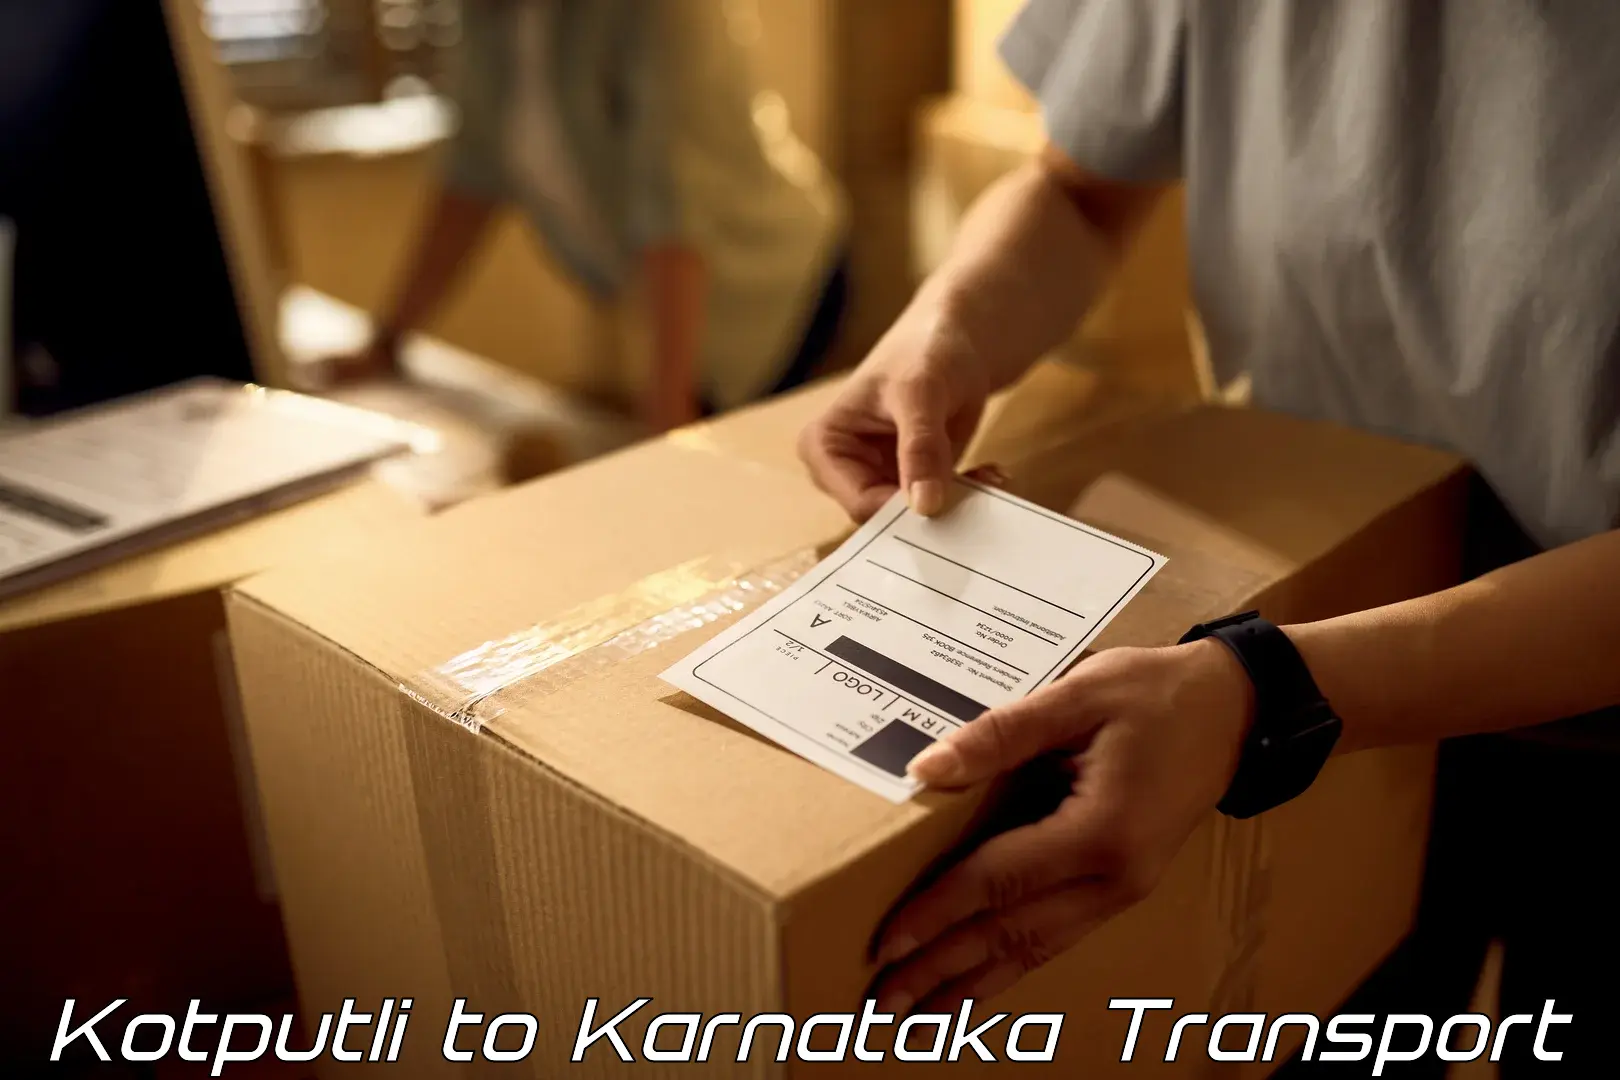 Logistics transportation services Kotputli to Vijayapura